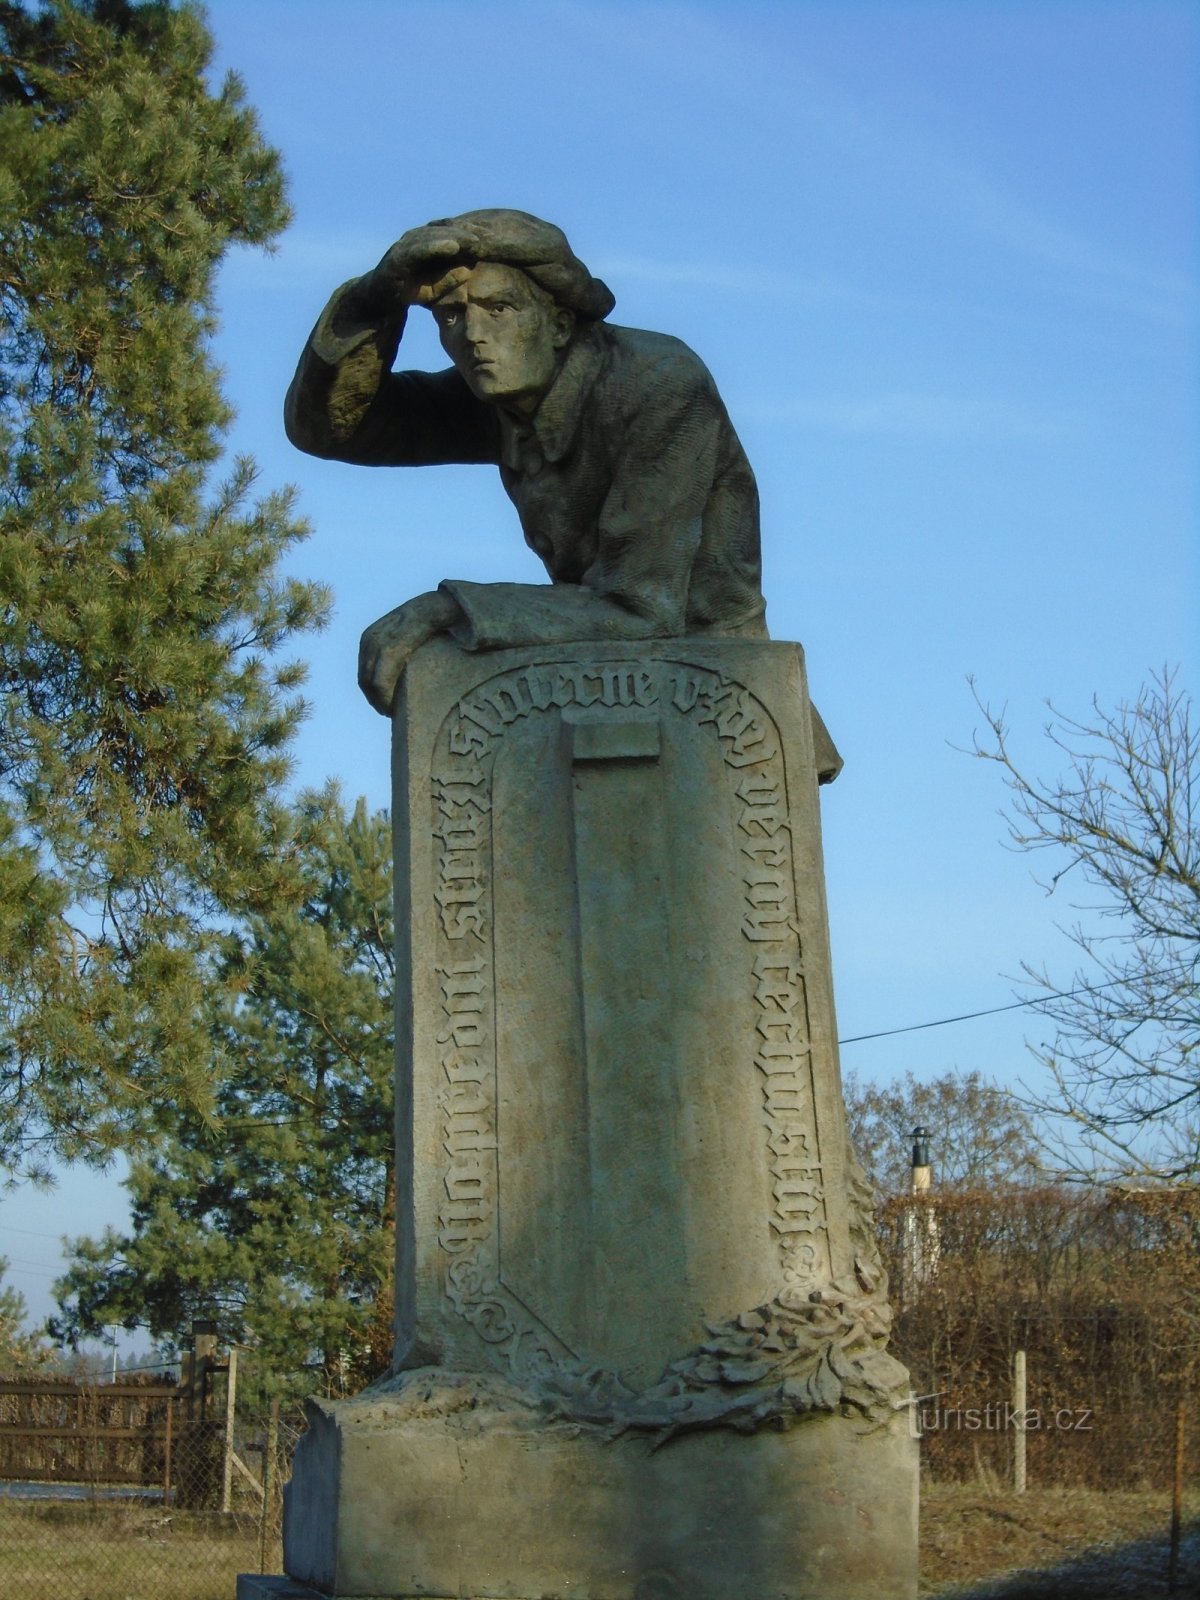 Đài tưởng niệm những người thiệt mạng trong Chiến tranh thế giới thứ nhất ở Svinary (Hradec Králové, 1 tháng 23.1.2019 năm XNUMX)